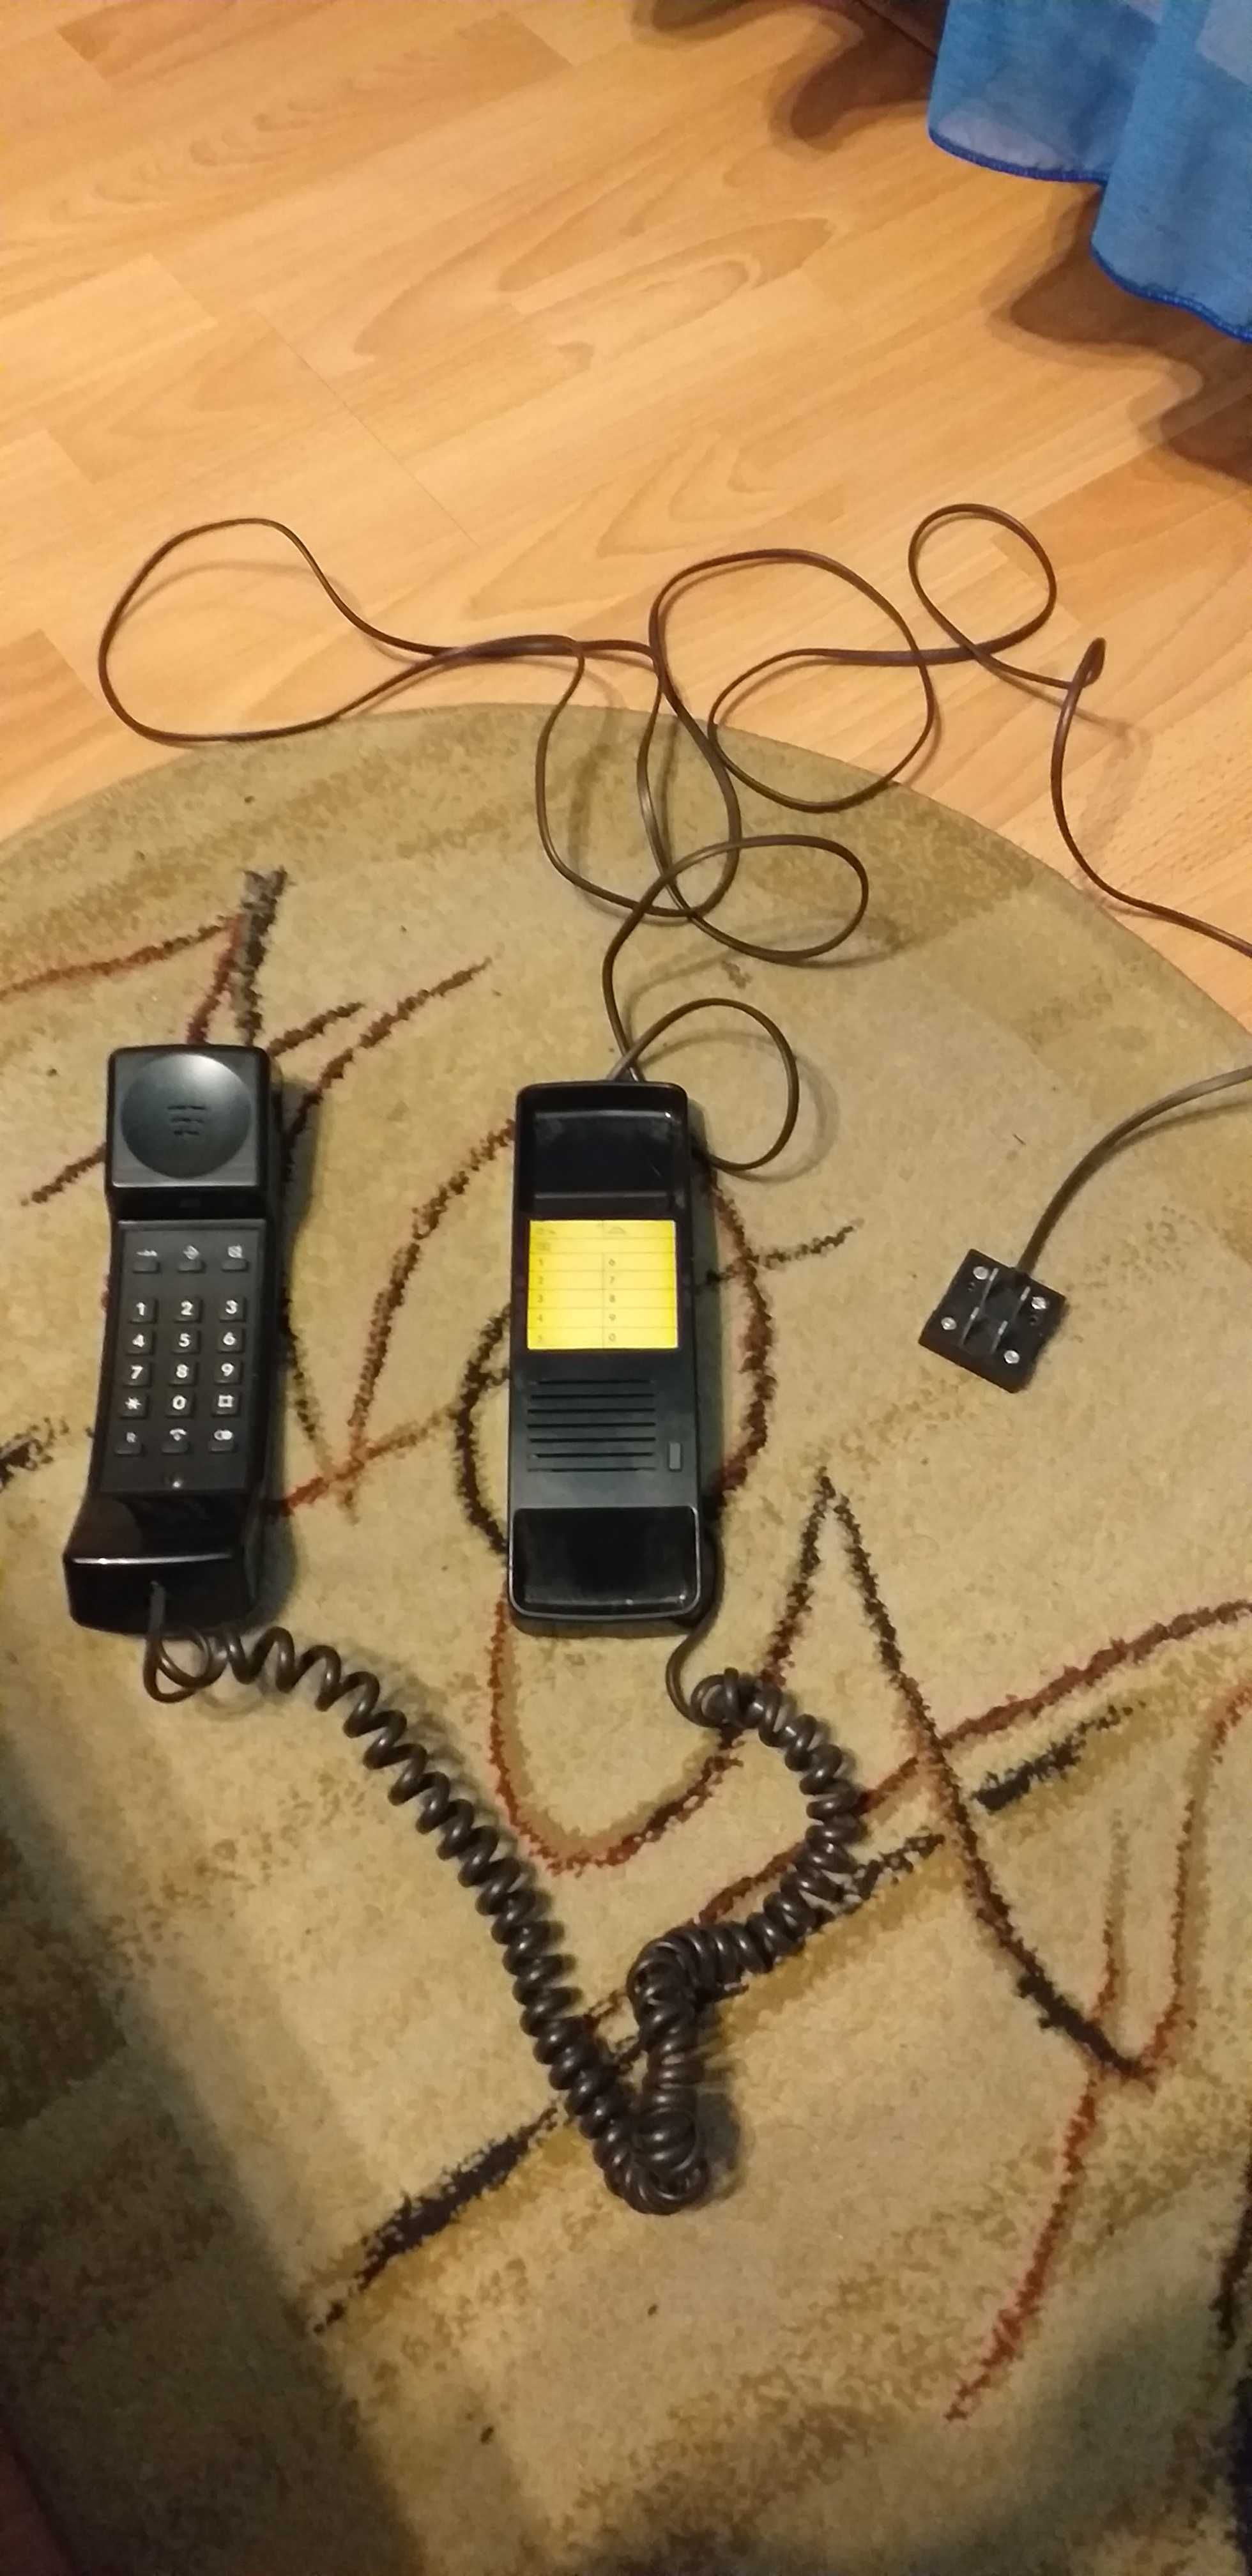 Telefon fix vintage perfect funcțional de colecție complet